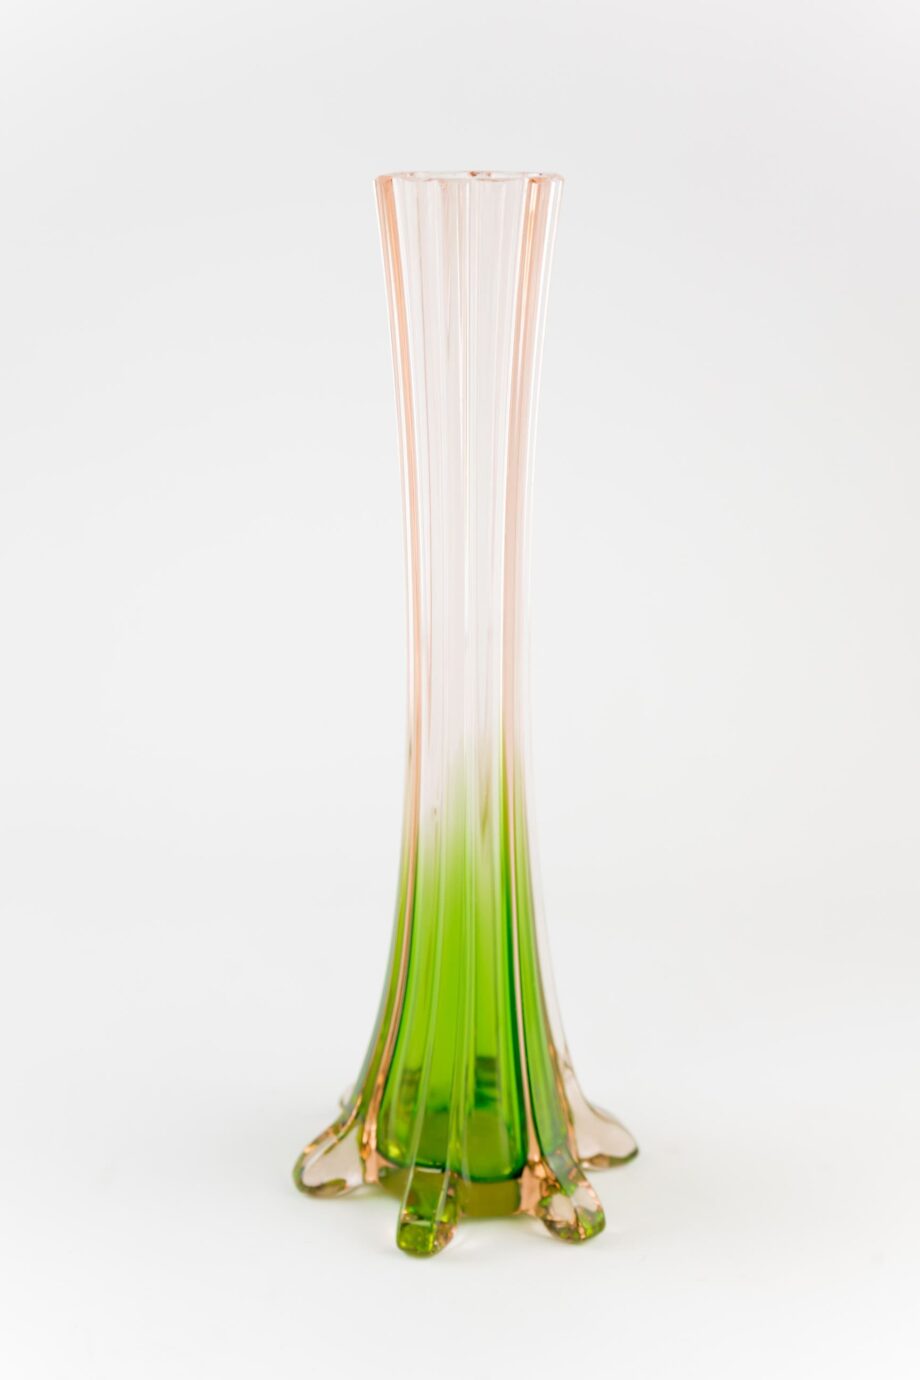 Pre-Loved green/pink vase